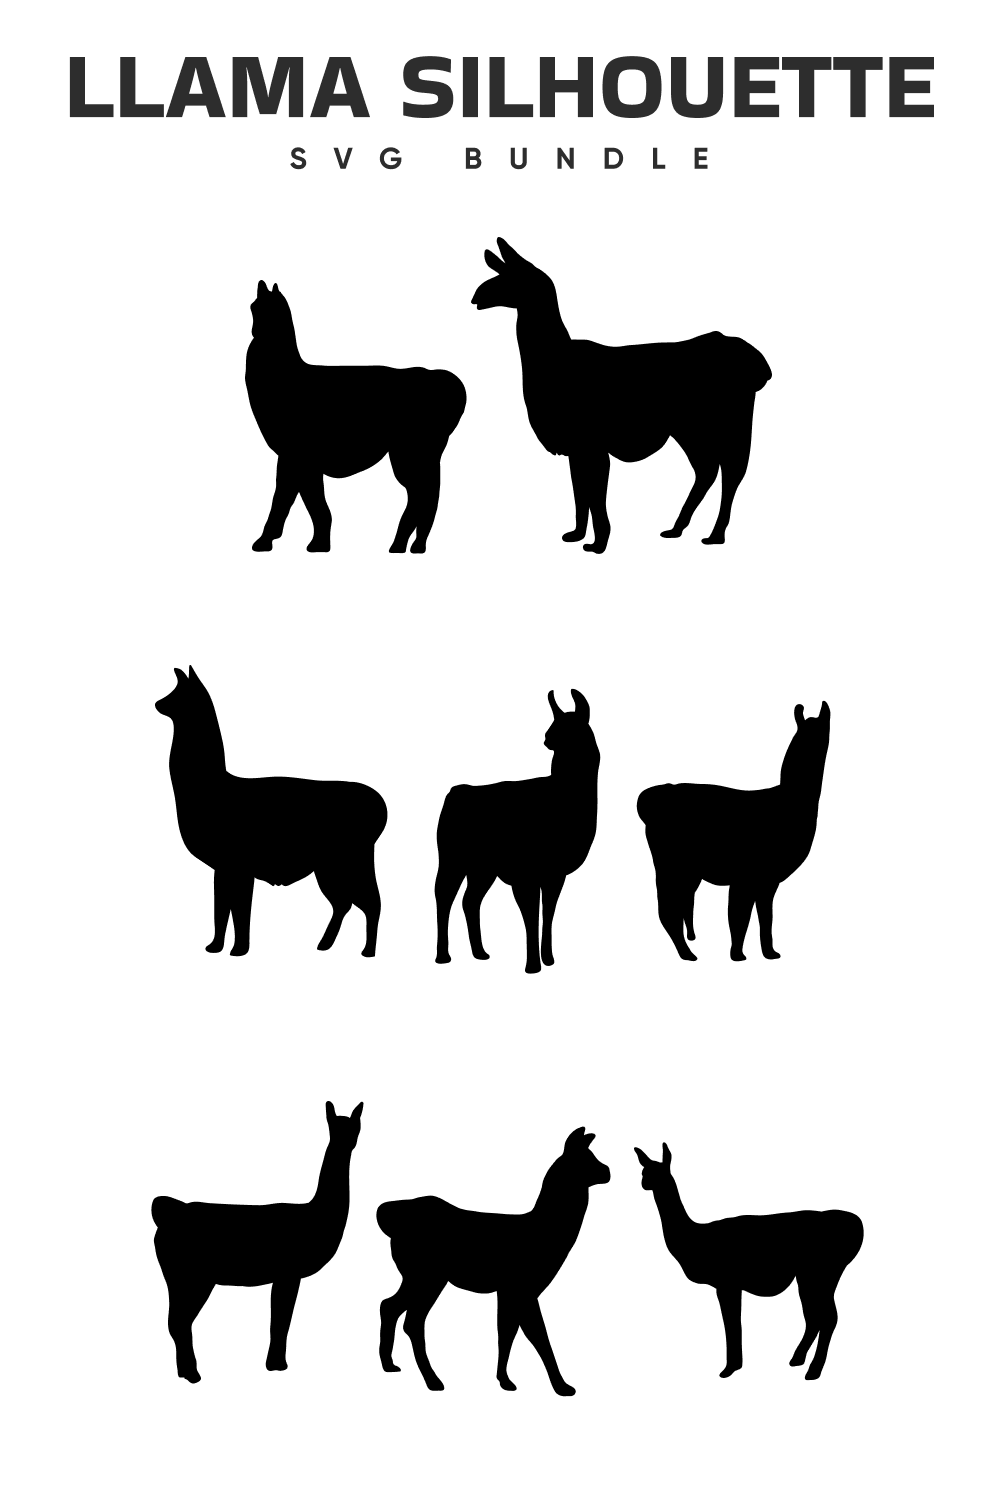 Llama silhouettes svg bundle.